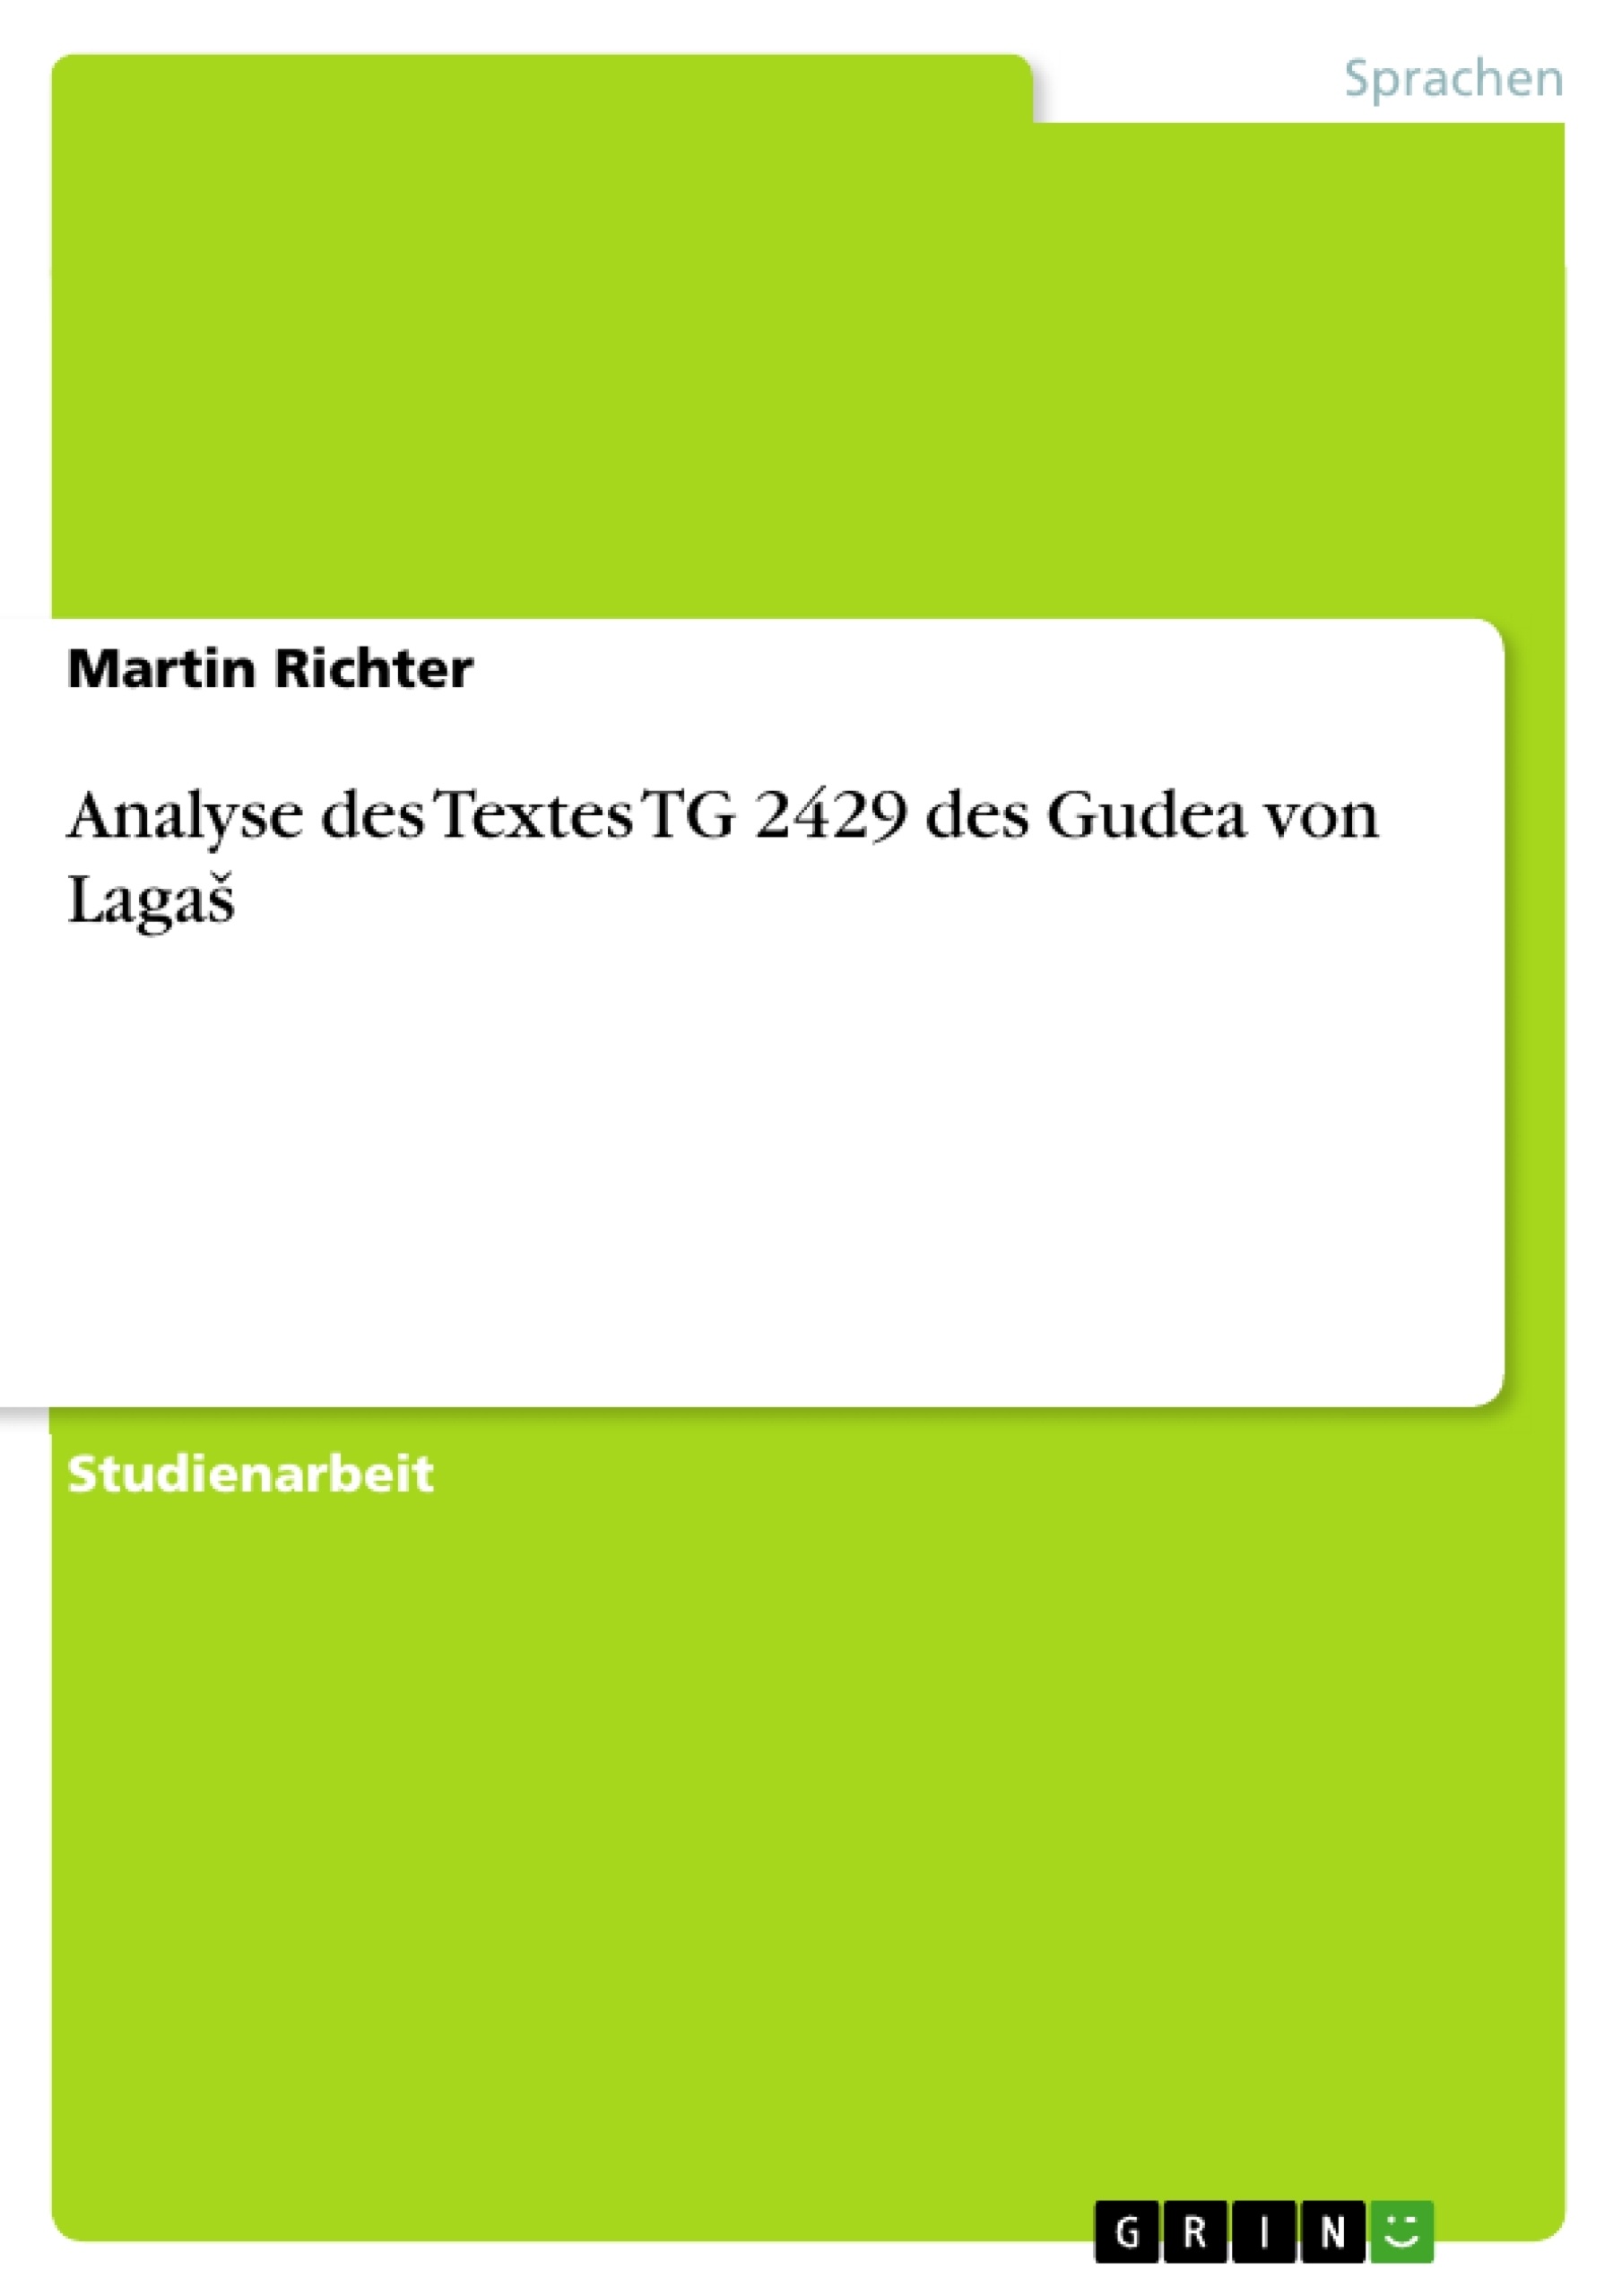 Título: Analyse des Textes TG 2429 des Gudea von Lagaš